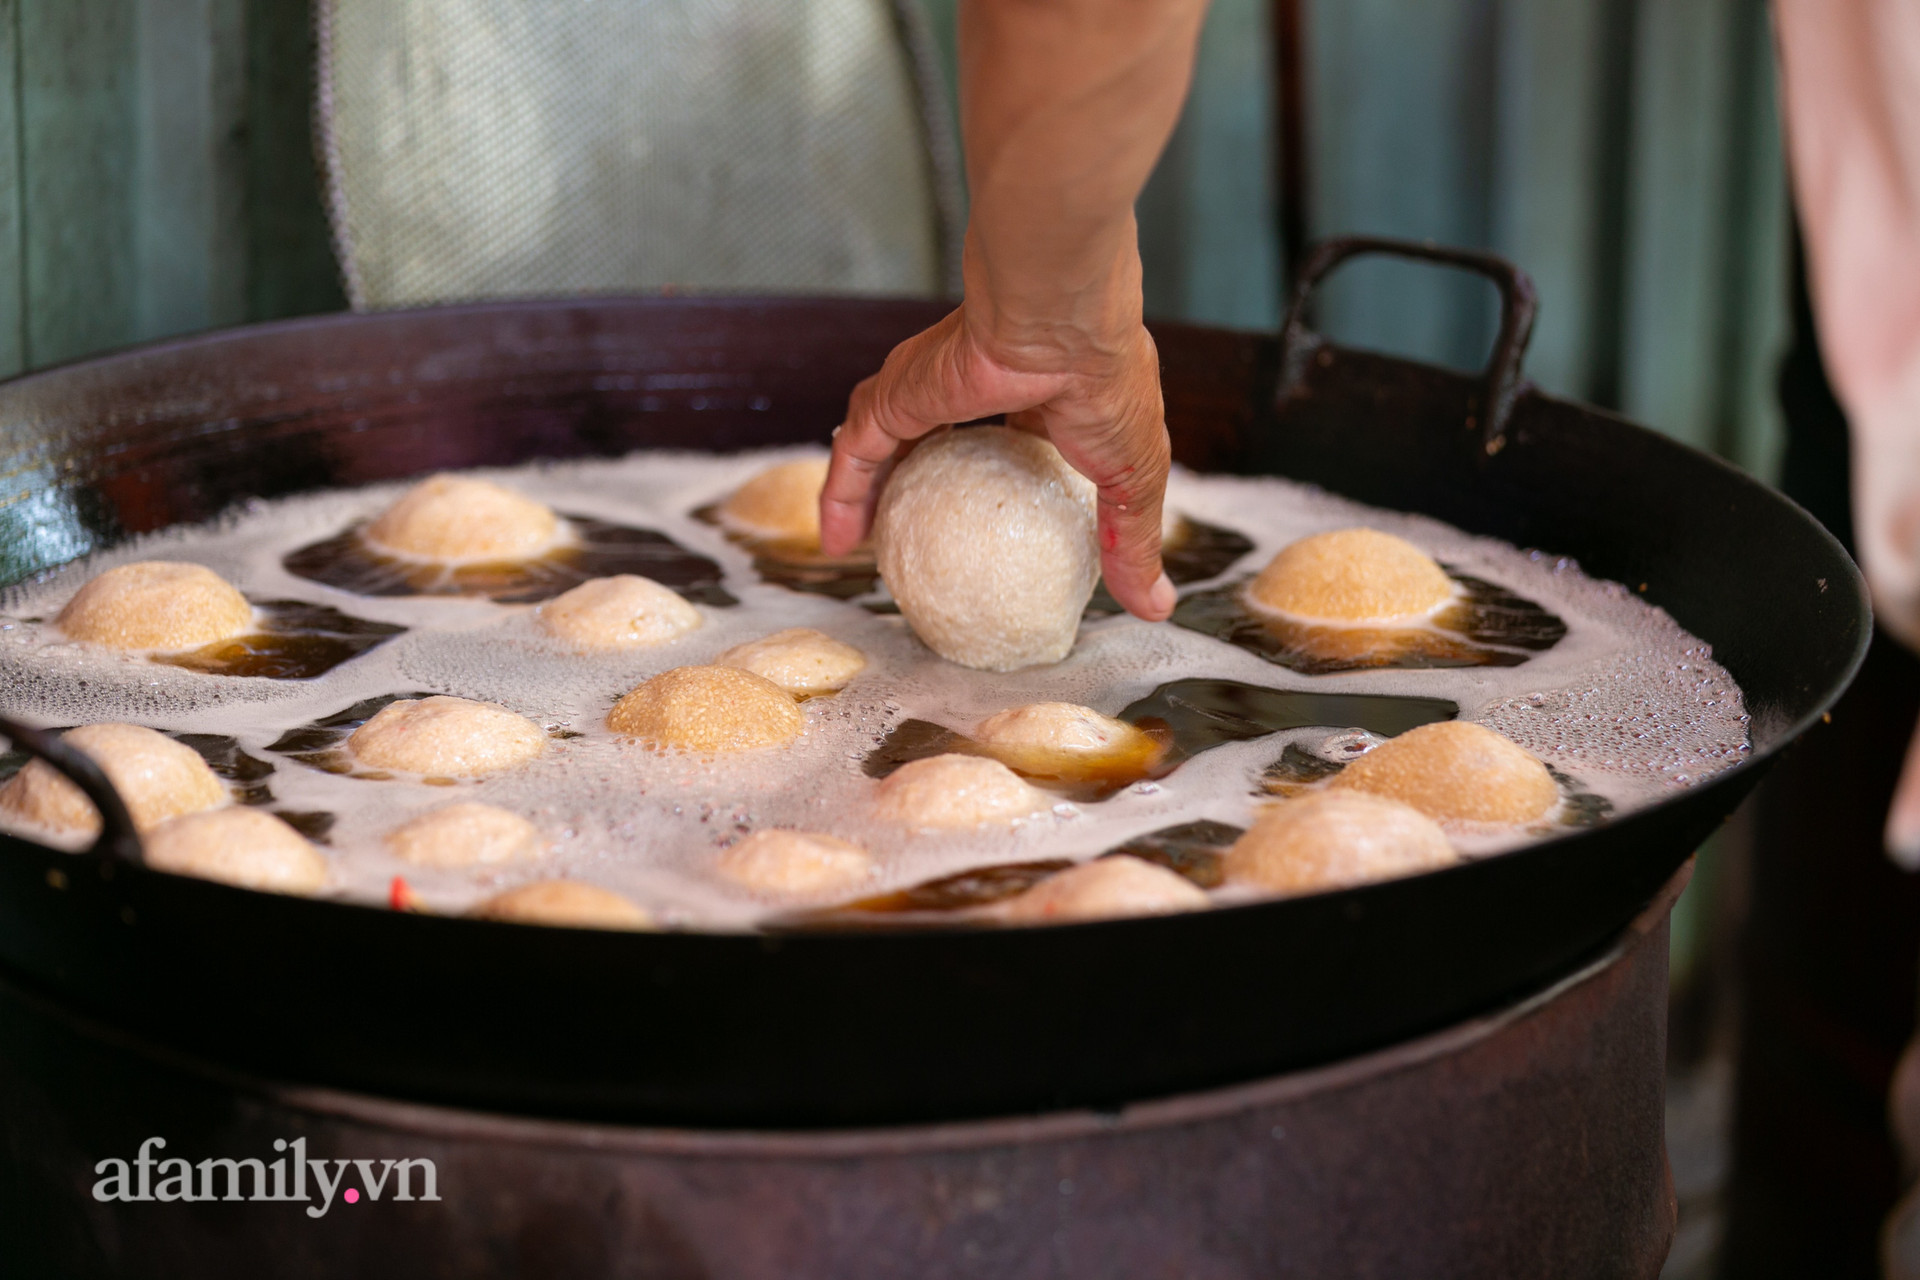 Độc đáo bánh lựu cầu duyên truyền thống của người Hoa ở Sài Gòn: Chỉ bán duy nhất một lần trong năm, 4 người phụ làm hơn 1.000 cái mà bán sạch trong 1 tiếng - Ảnh 8.